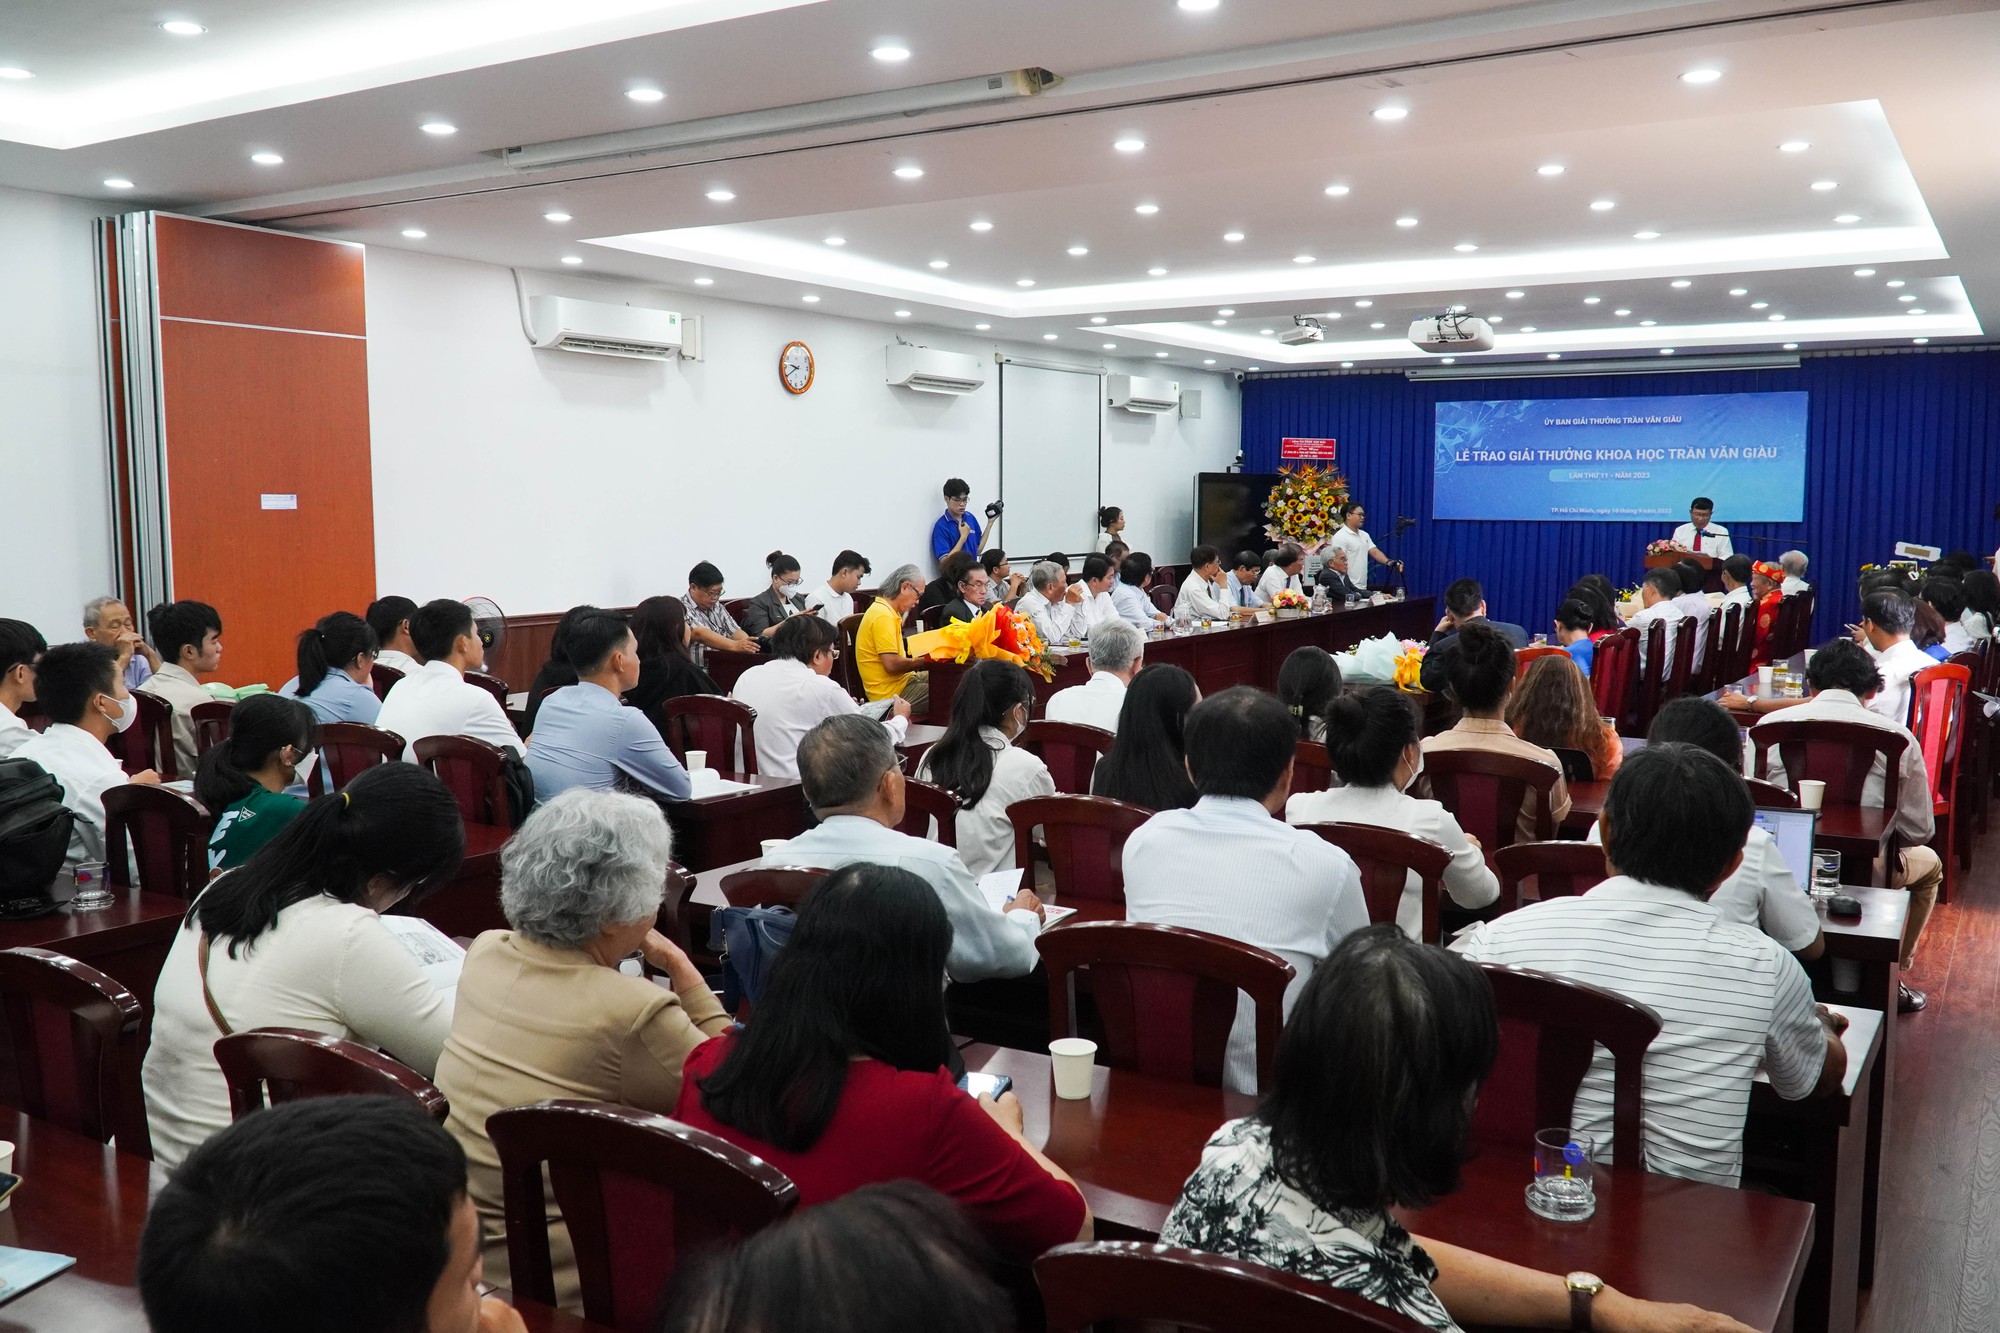 Nhà nghiên cứu Nguyễn Đình Tư nhận giải thưởng khoa học Trần Văn Giàu năm 2023 - Ảnh 9.